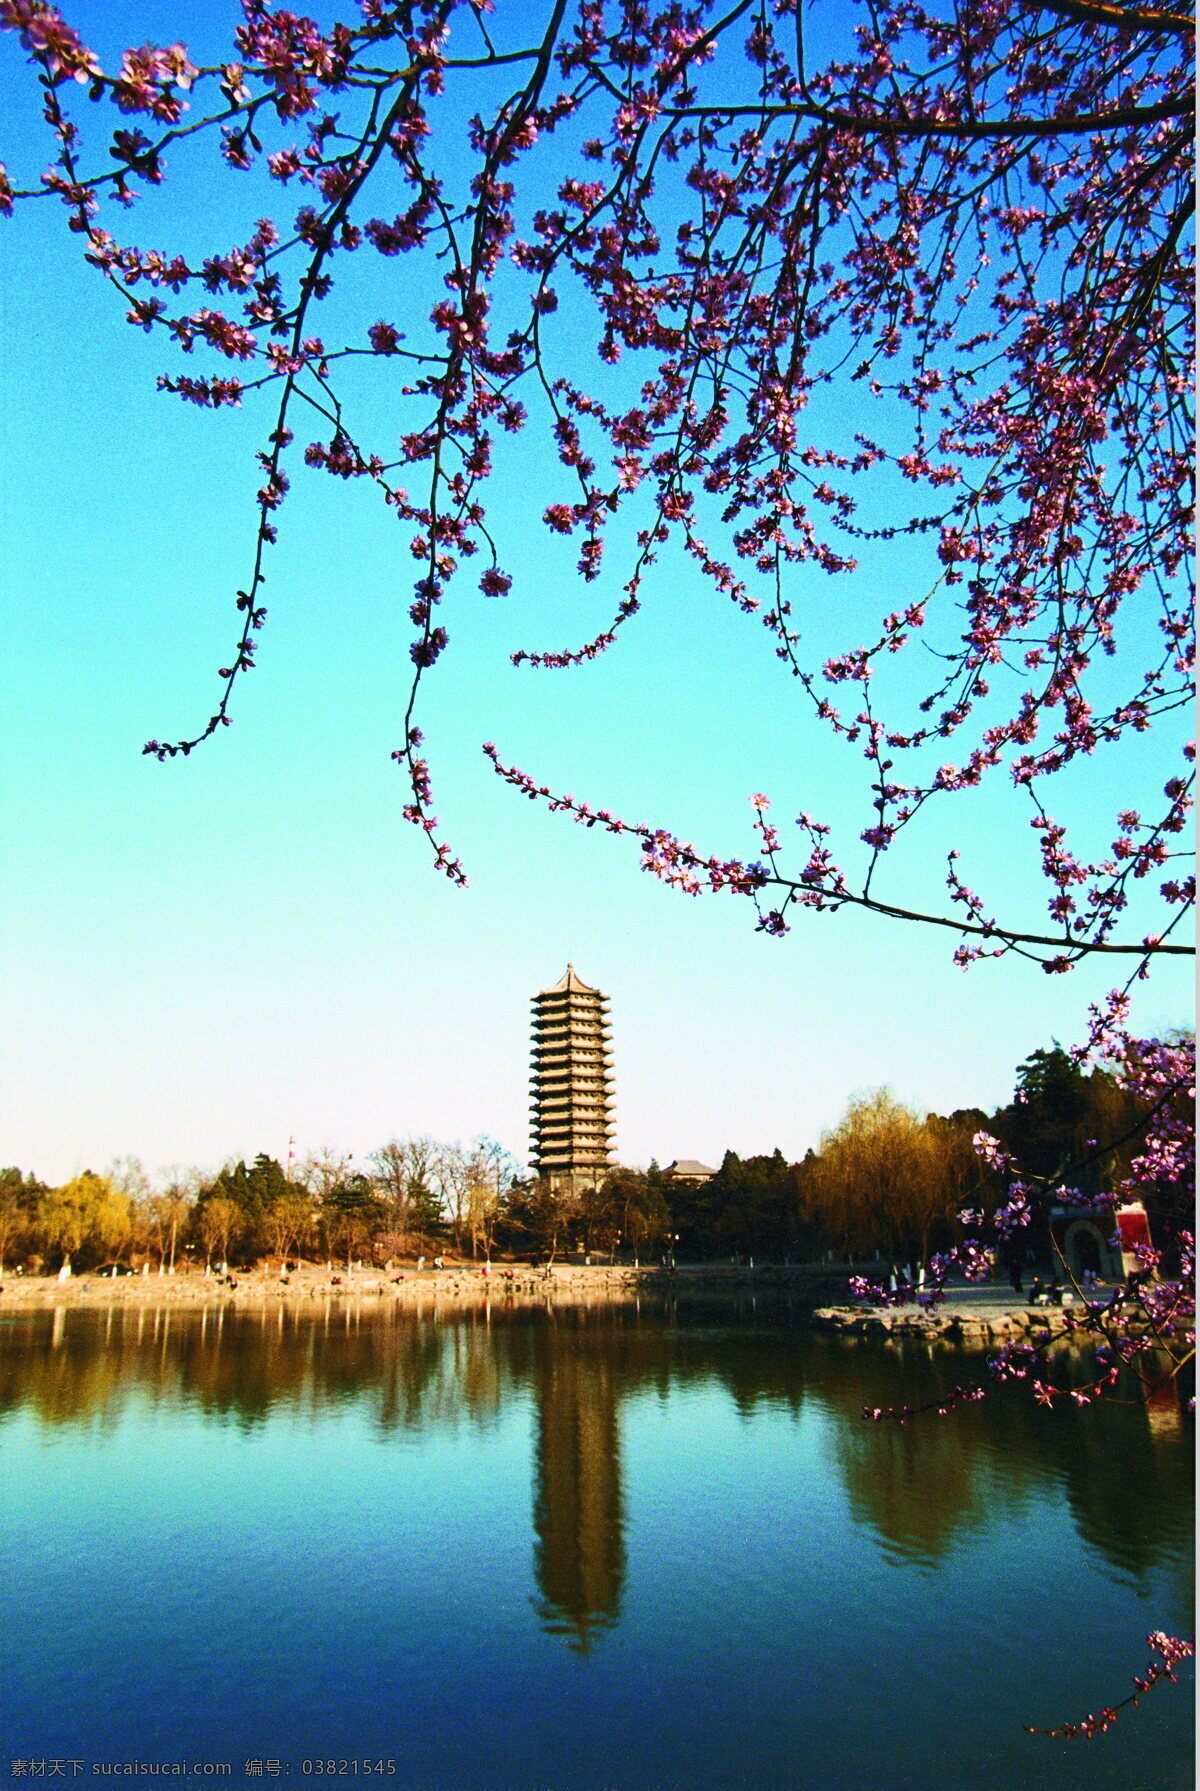 唯美 风景 风光 旅行 人文 北京 北京大学 北大 博雅塔 未名湖 旅游摄影 国内旅游